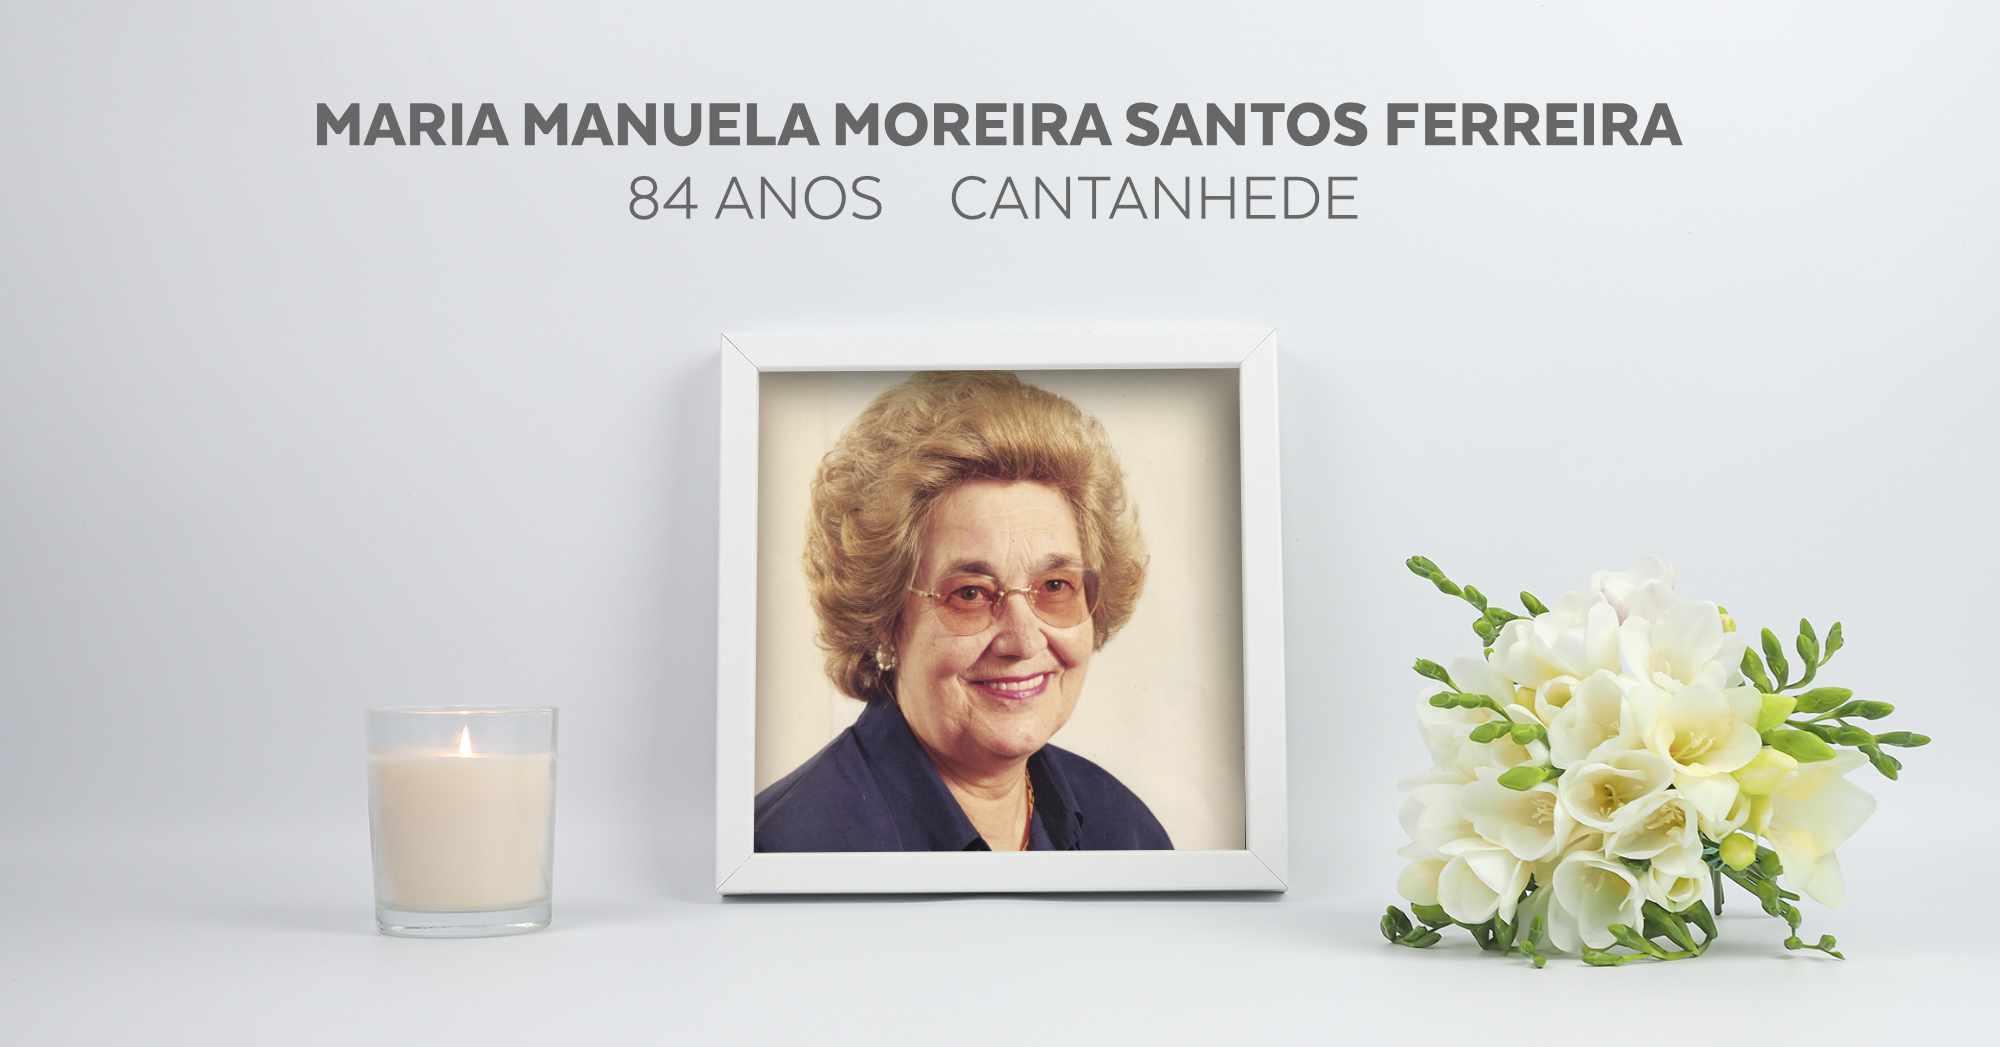 Maria Manuela Moreira Santos Ferreira